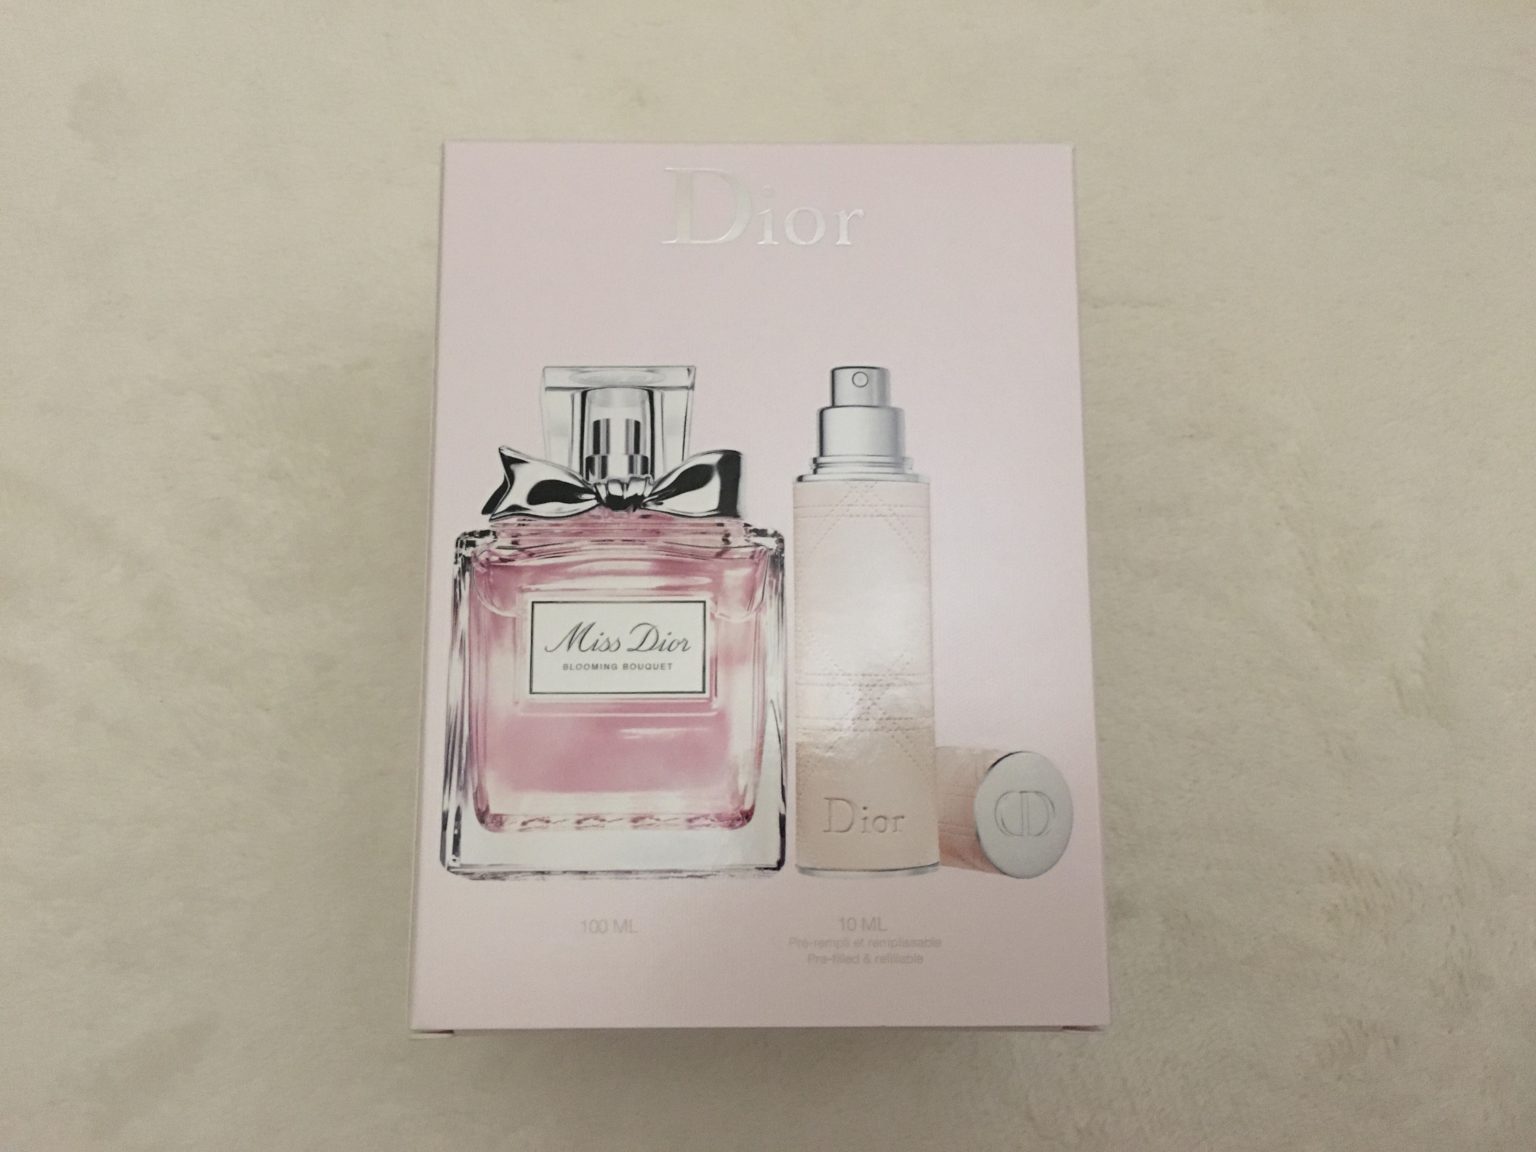 アットコスメで人気の香水【Dior】ミス ディオール ブルーミング ブーケ リフィラブル スプレー付を購入してみた | ひめごと